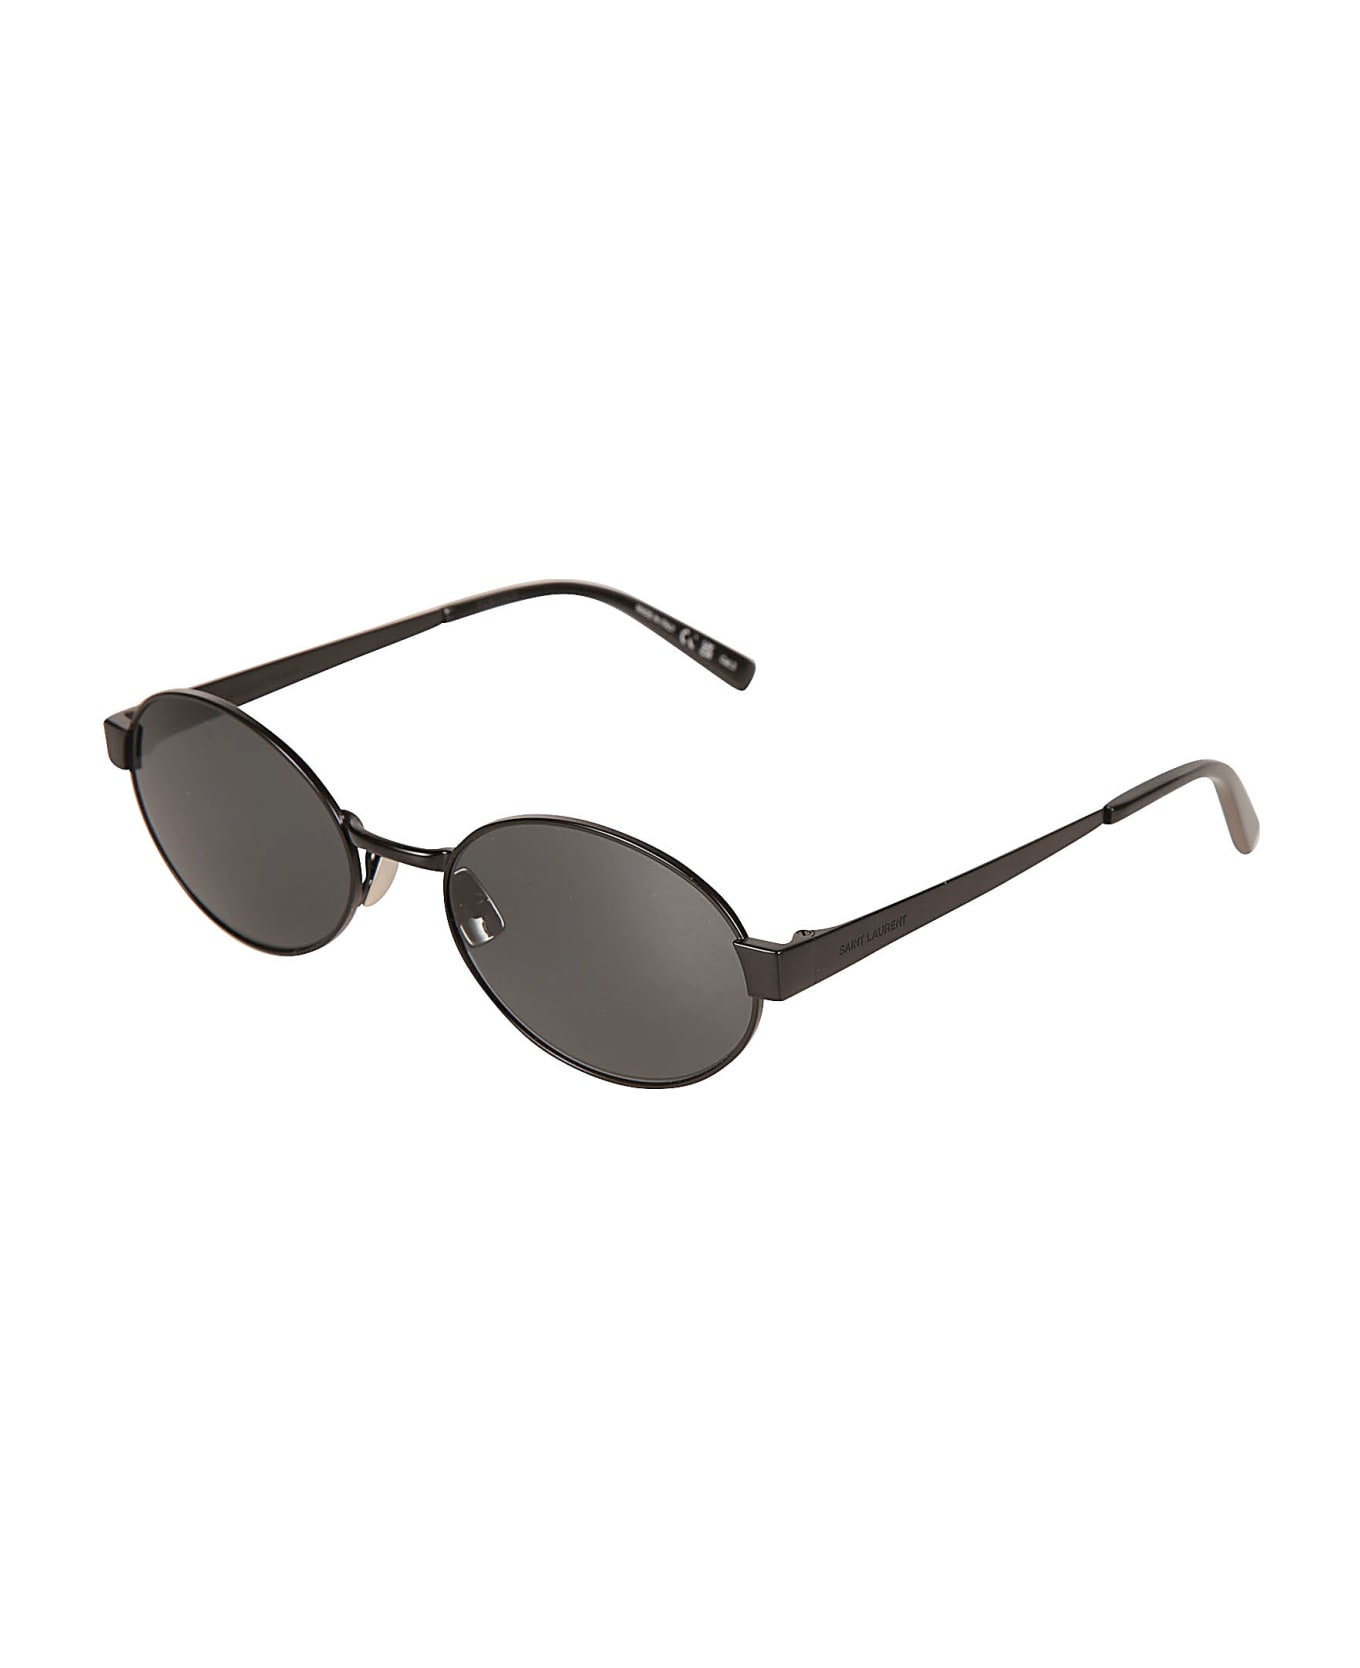 Saint Laurent Eyewear Sl 692 Sunglasses - Black